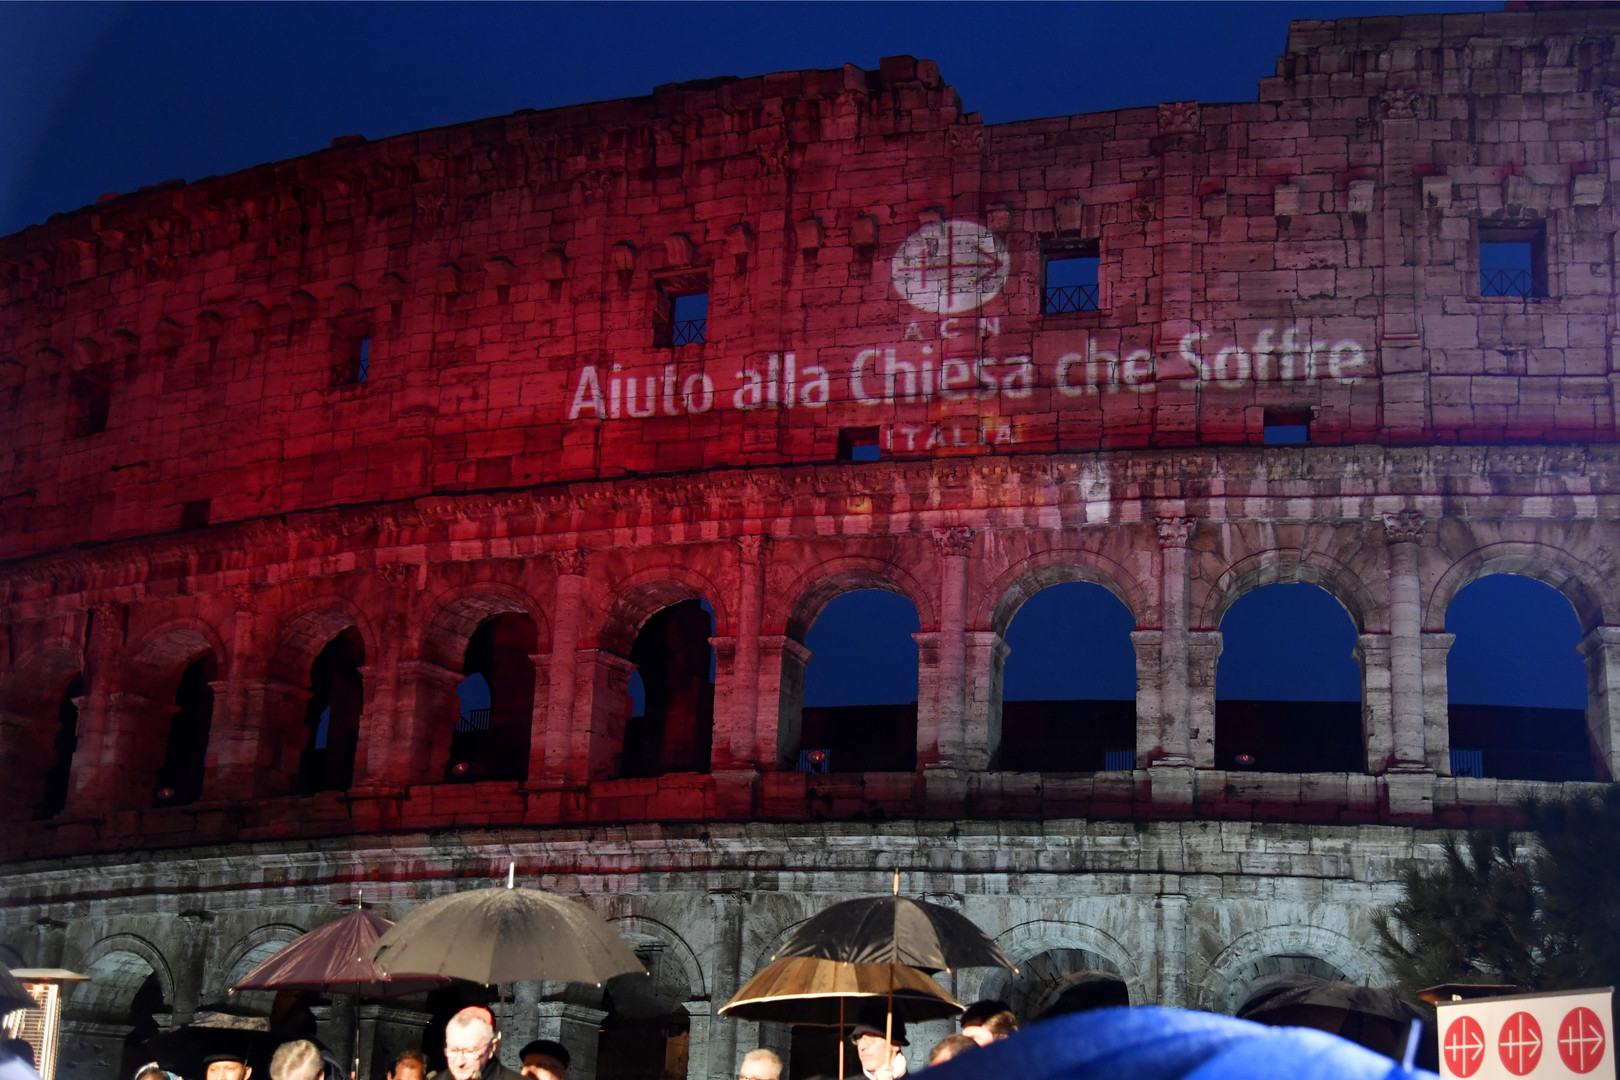 Le Colisée de Rome illuminé en rouge en hommage aux chrétiens persécutés dans le monde (VIDEO)